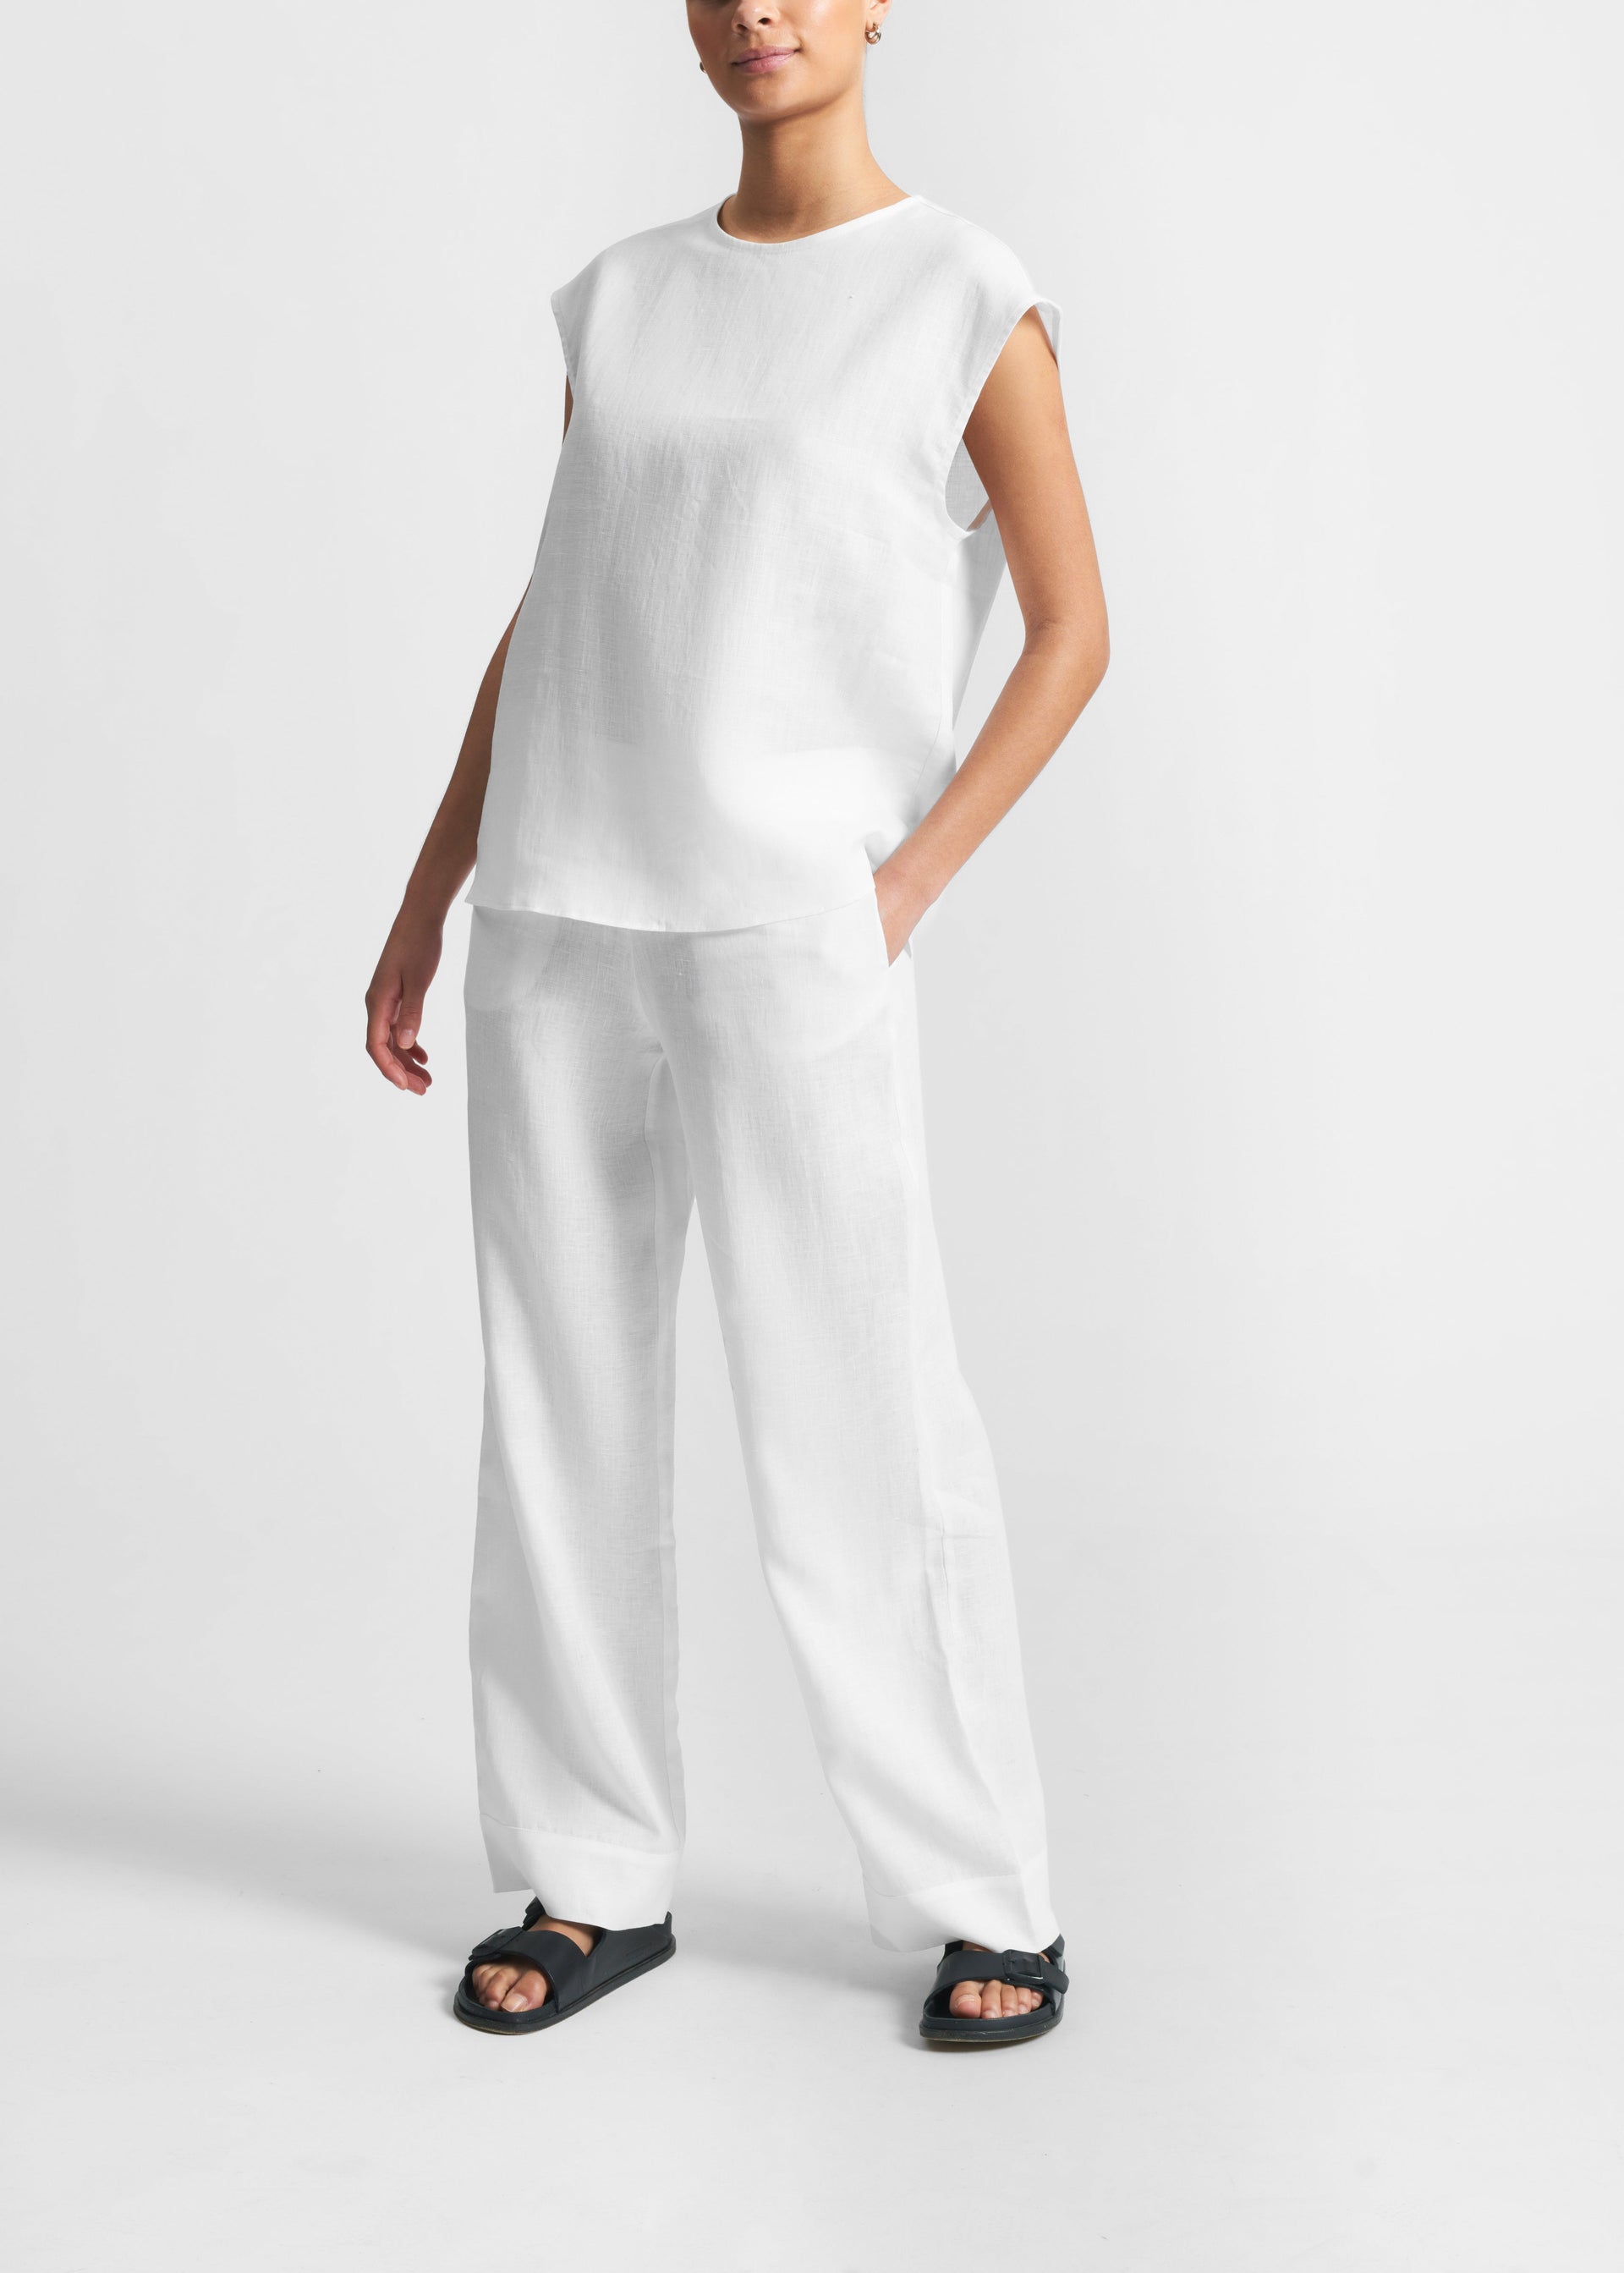 Dasha White Organic Linen Sleeveless Top